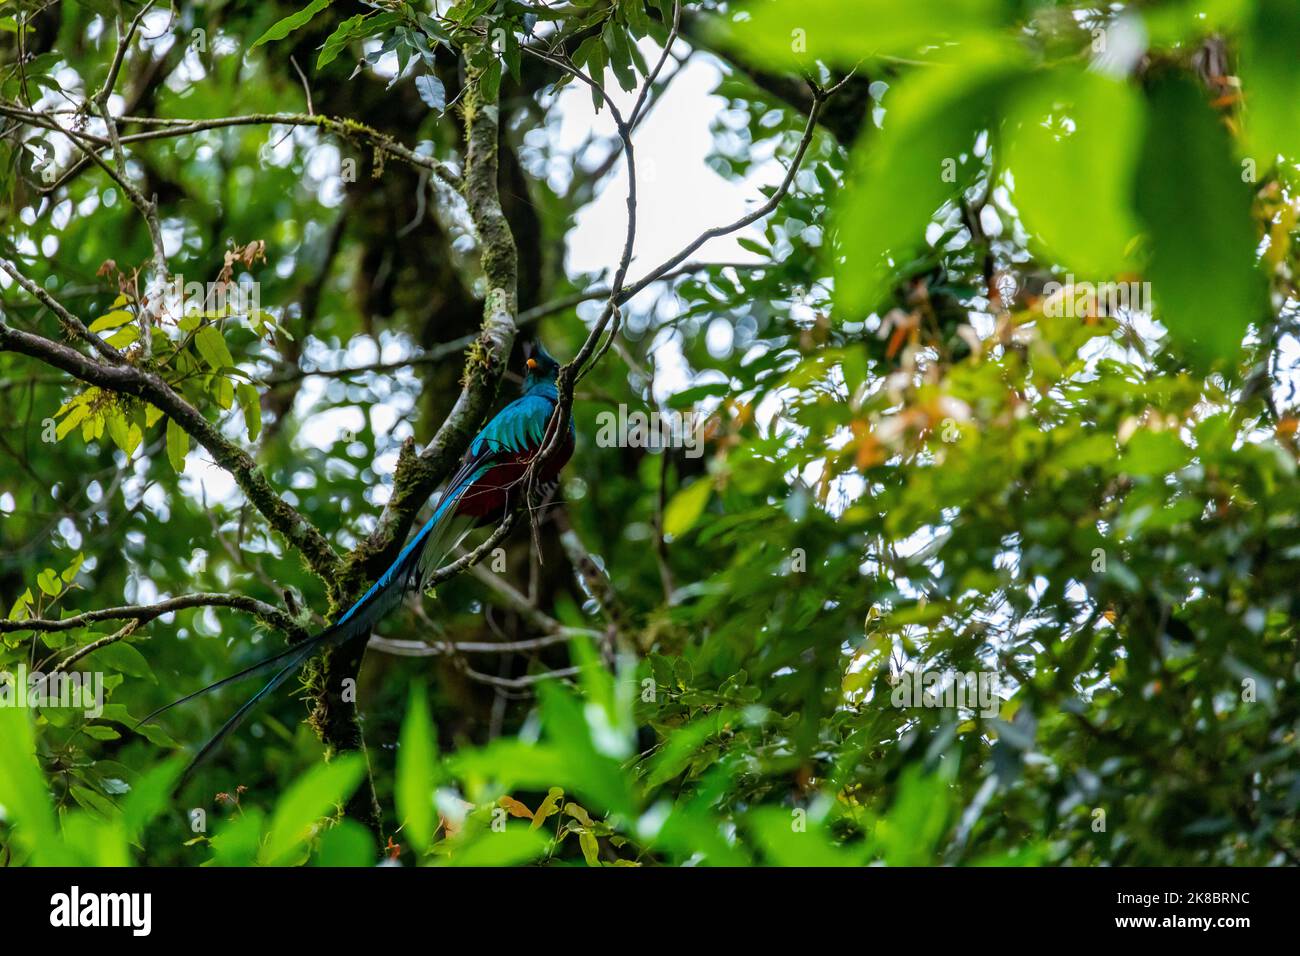 Quetzal resplendent, Pharomachrus mocinno, Savegre au Costa Rica, avec une forêt verte en arrière-plan. Magnifique oiseau rouge et vert sacré. Observation des oiseaux Banque D'Images